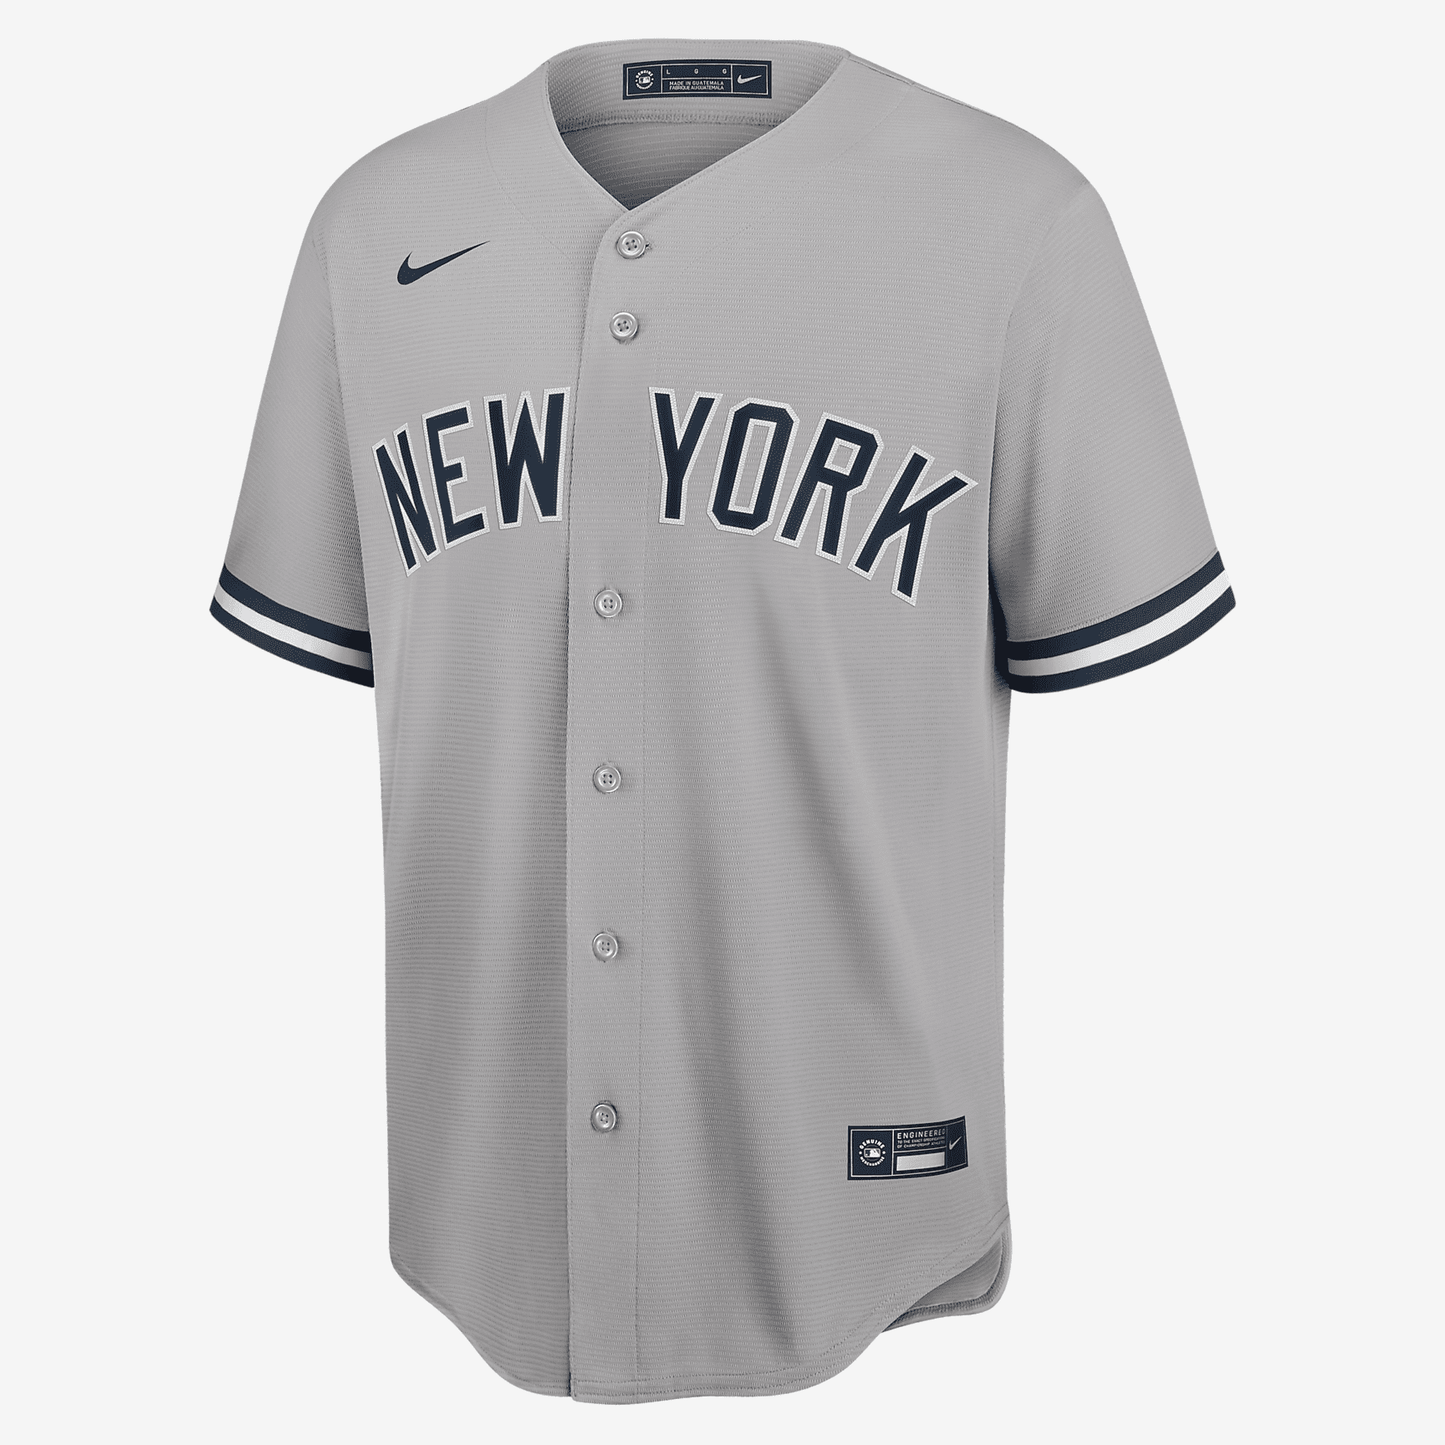 MLB New York Yankees (Derek Jeter) Men's Replica Baseball Jersey - Grey Heather